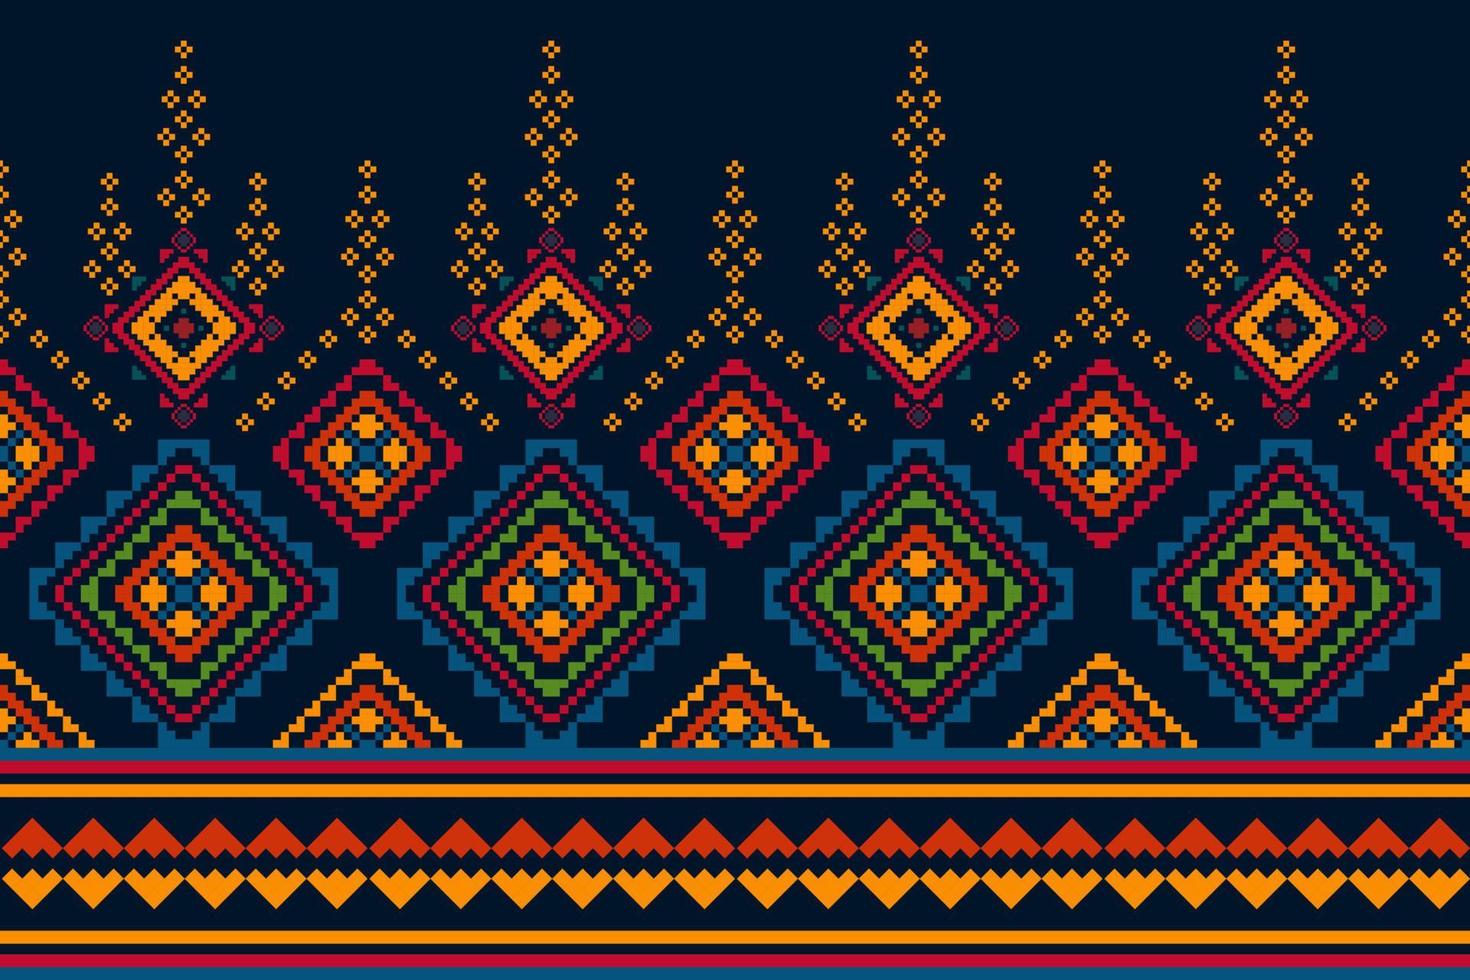 ikat etnisch naadloos patroon huis decoratie ontwerp. aztec kleding stof tapijt boho mandala's textiel decor behang. tribal inheems motief volk traditioneel borduurwerk vector illustraties achtergrond